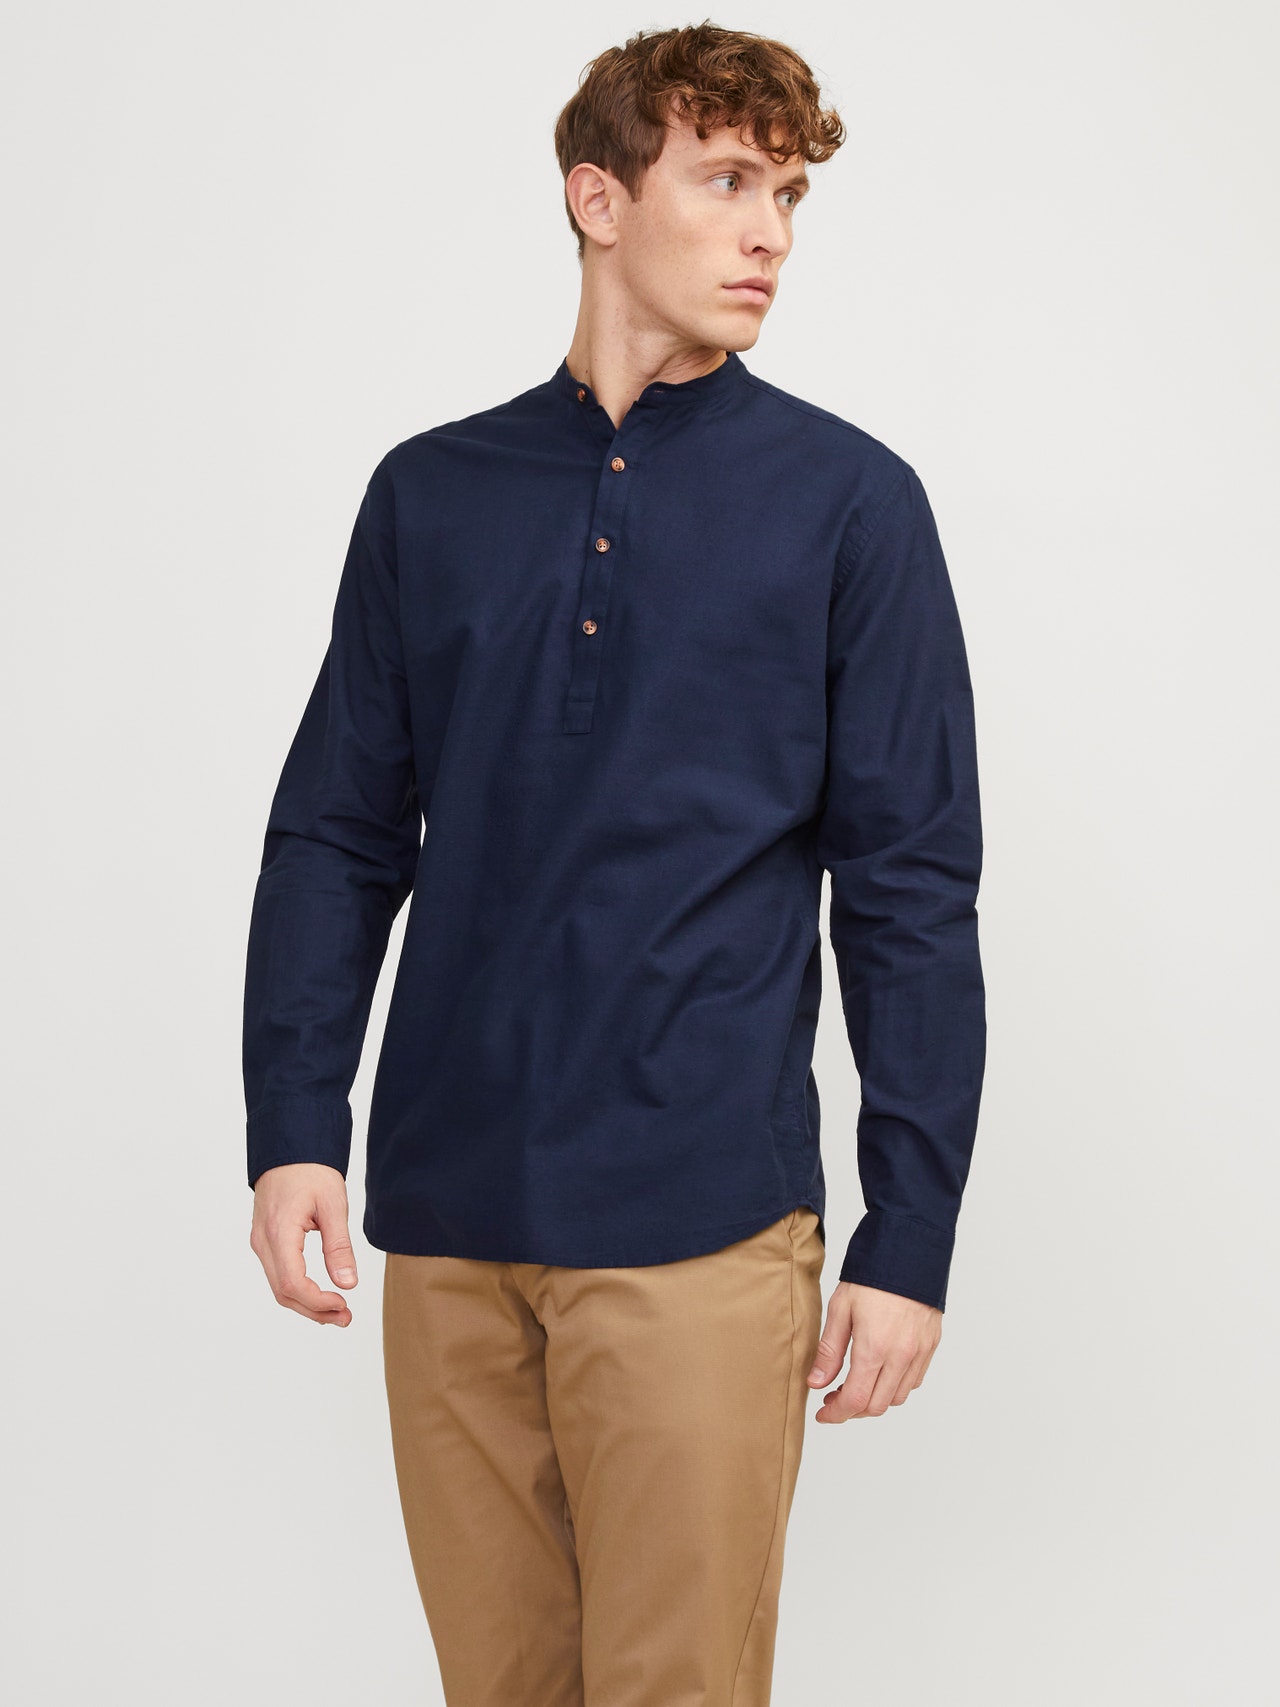 Jack & Jones Camisa Comfort Fit -Navy Blazer - 12248410